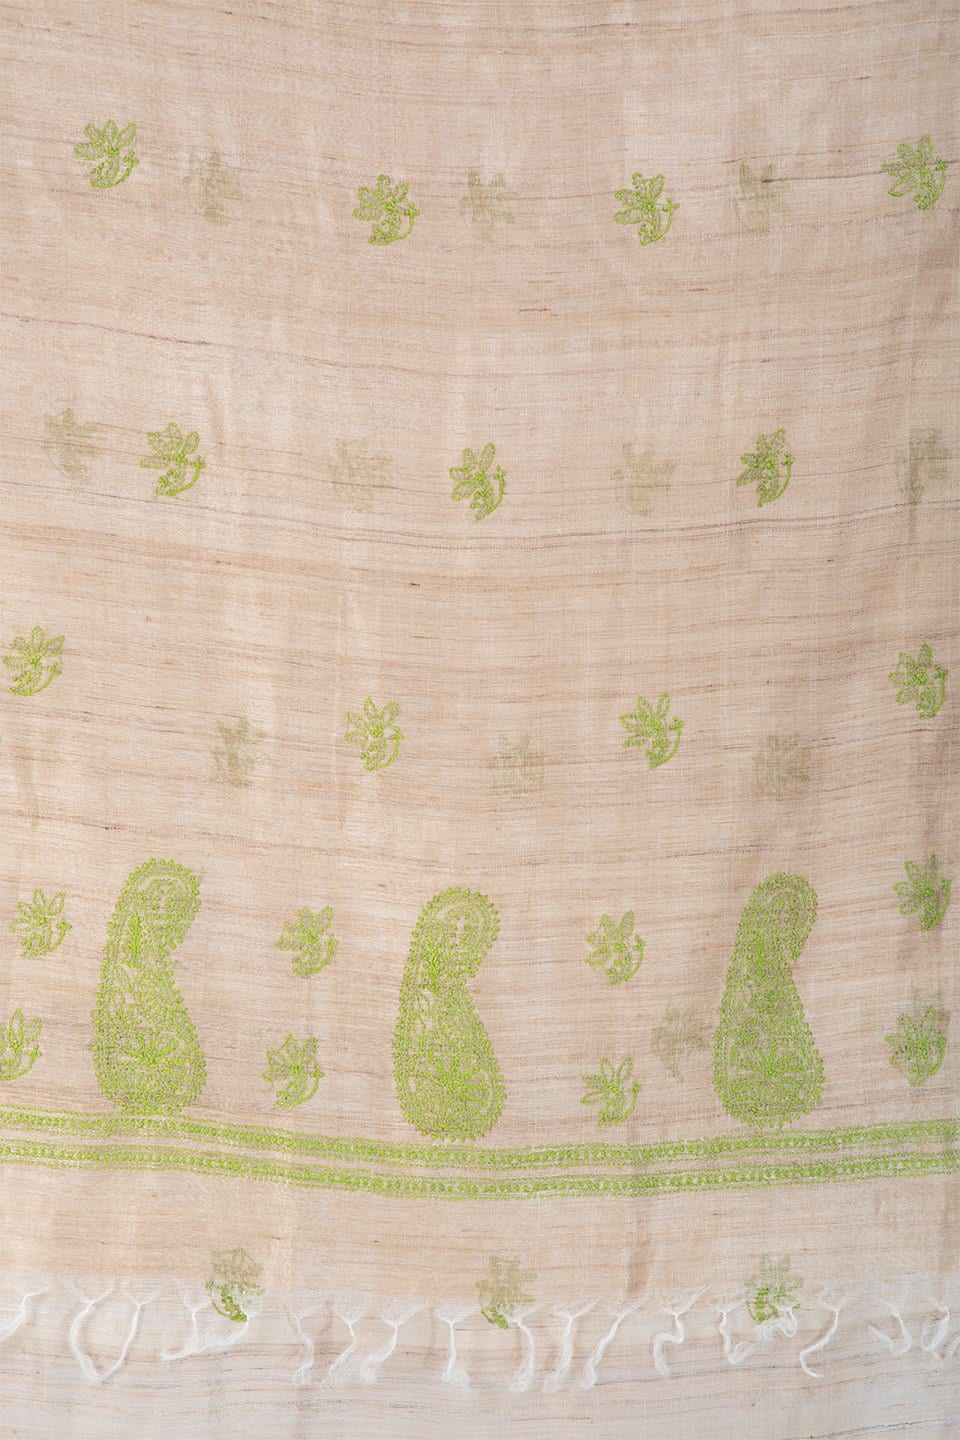 Lucknow Chikan Emporium Duppatta Cotton Green Thread (Beige) 